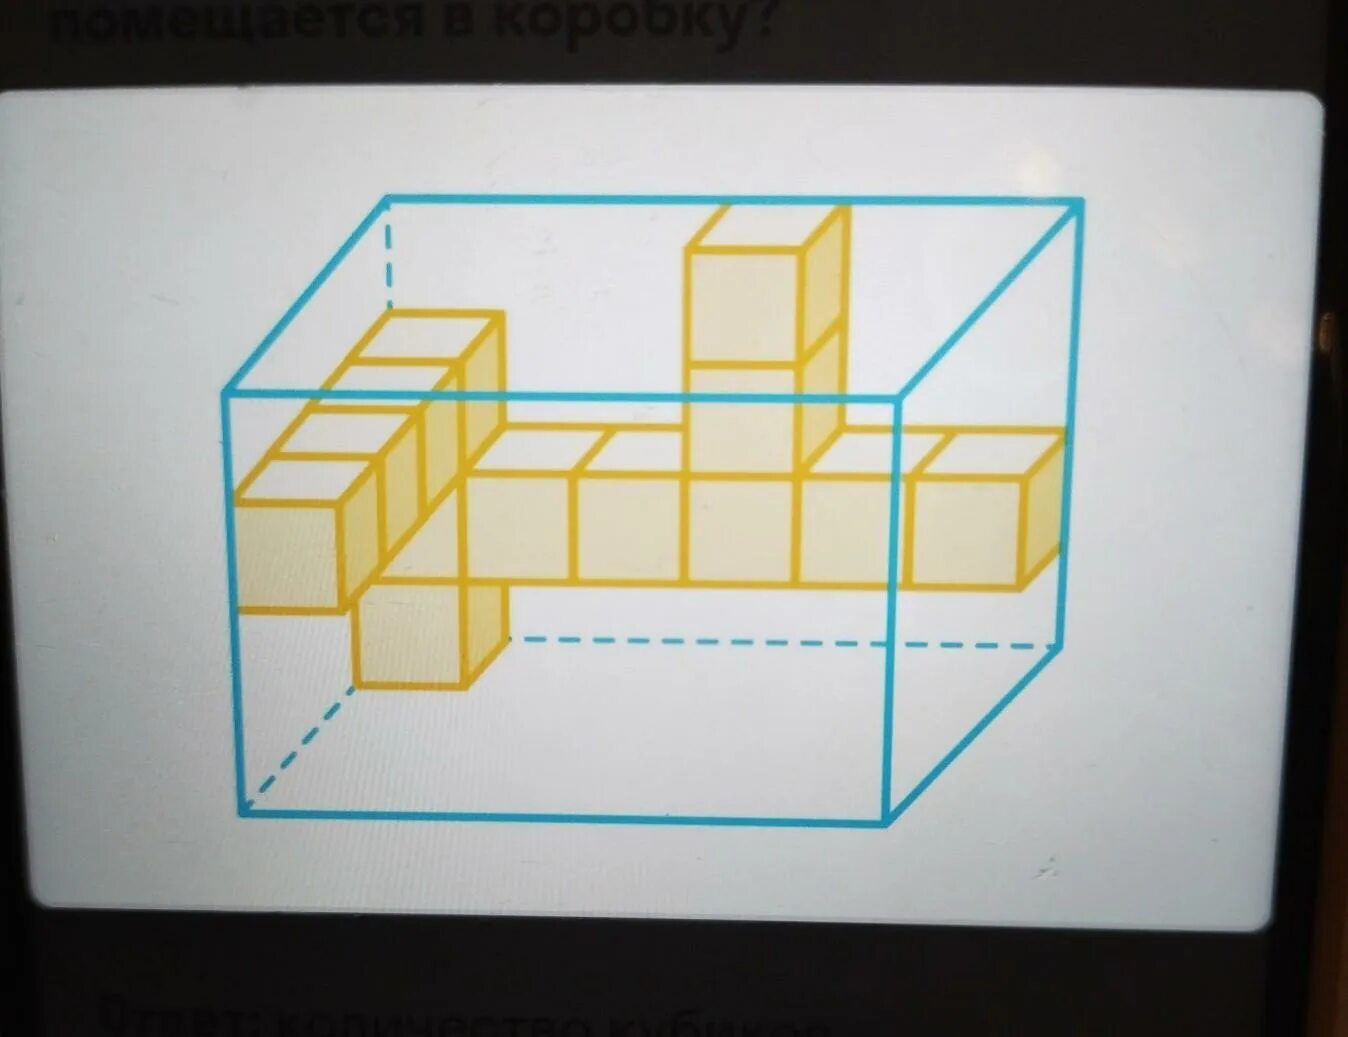 Из скольких кубиков состоит параллелепипед. Кубик и параллелепипед. Прямоугольный параллелепипед из кубиков. Коробка в форме параллелепипеда. Изображенной на рисунке кубика поместили в коробку.